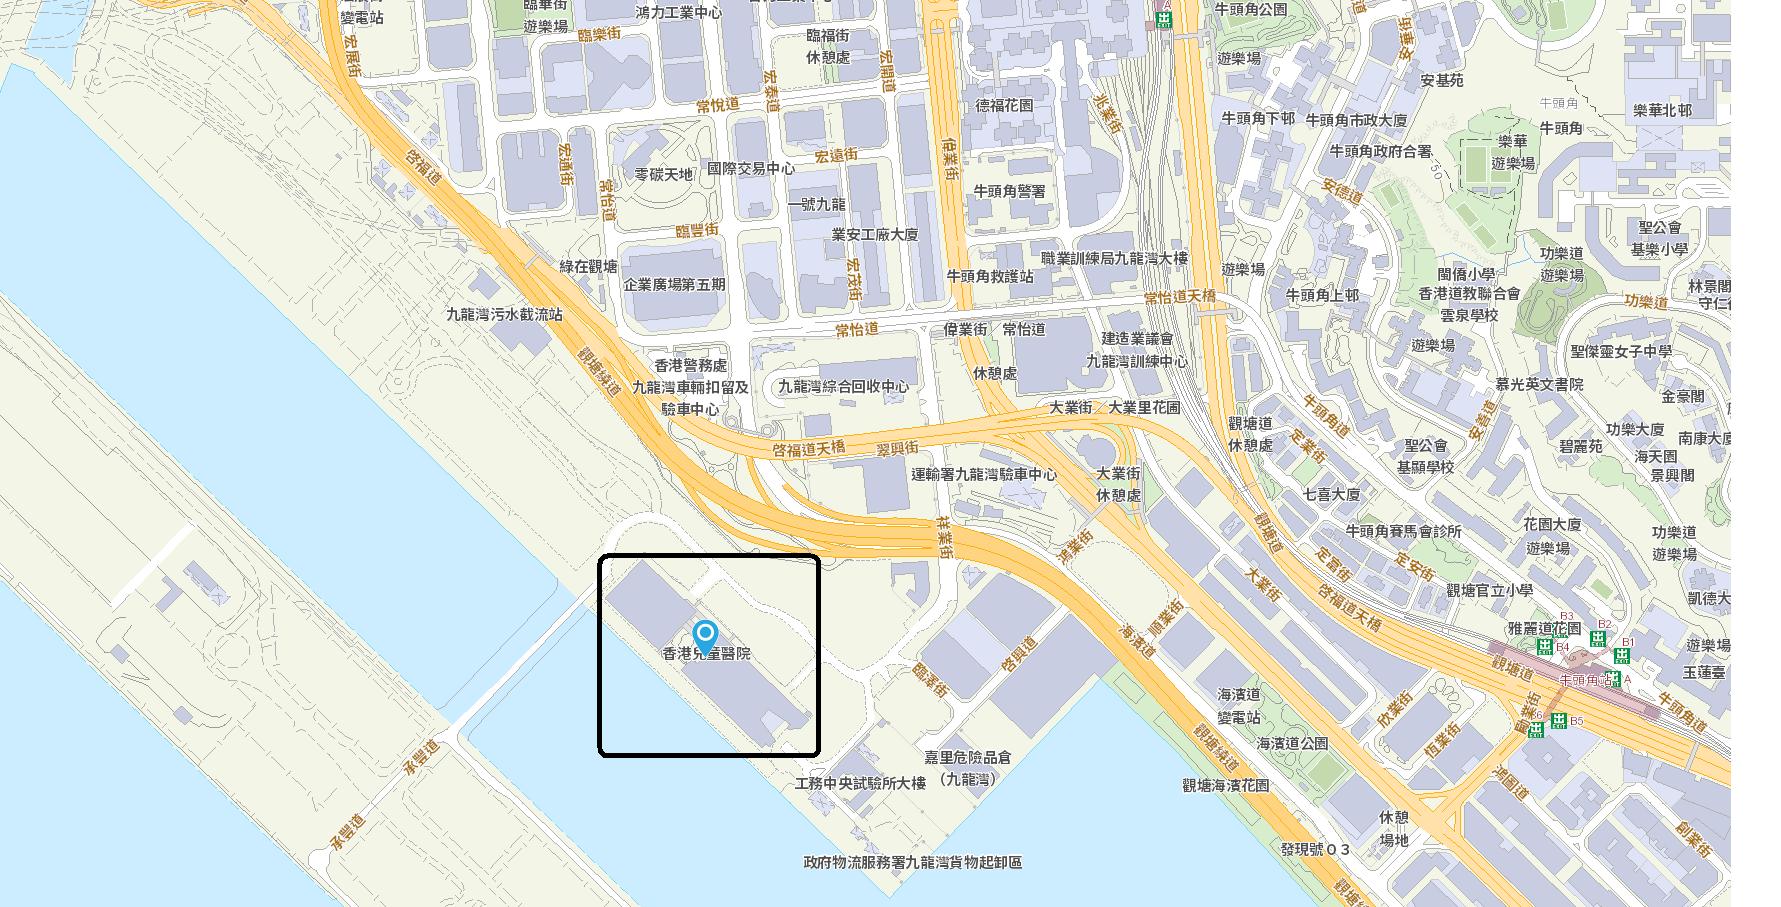 Hong Kong Children's Hospital Map